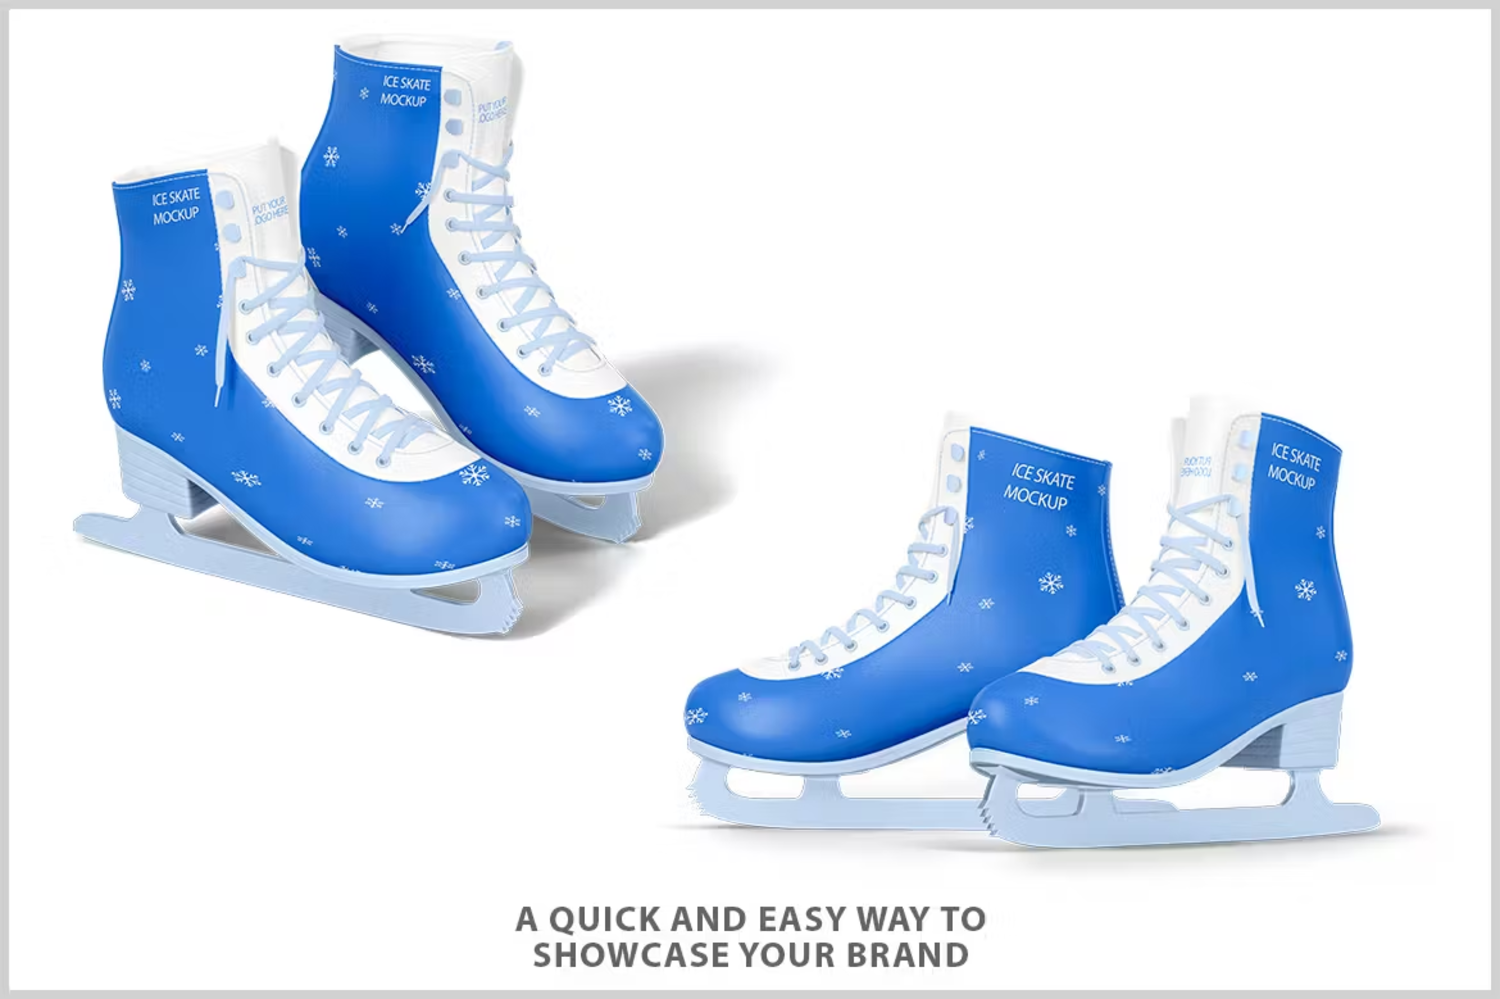 5817 创意设计溜冰鞋多用途模板样机-Ice Skate Mockup